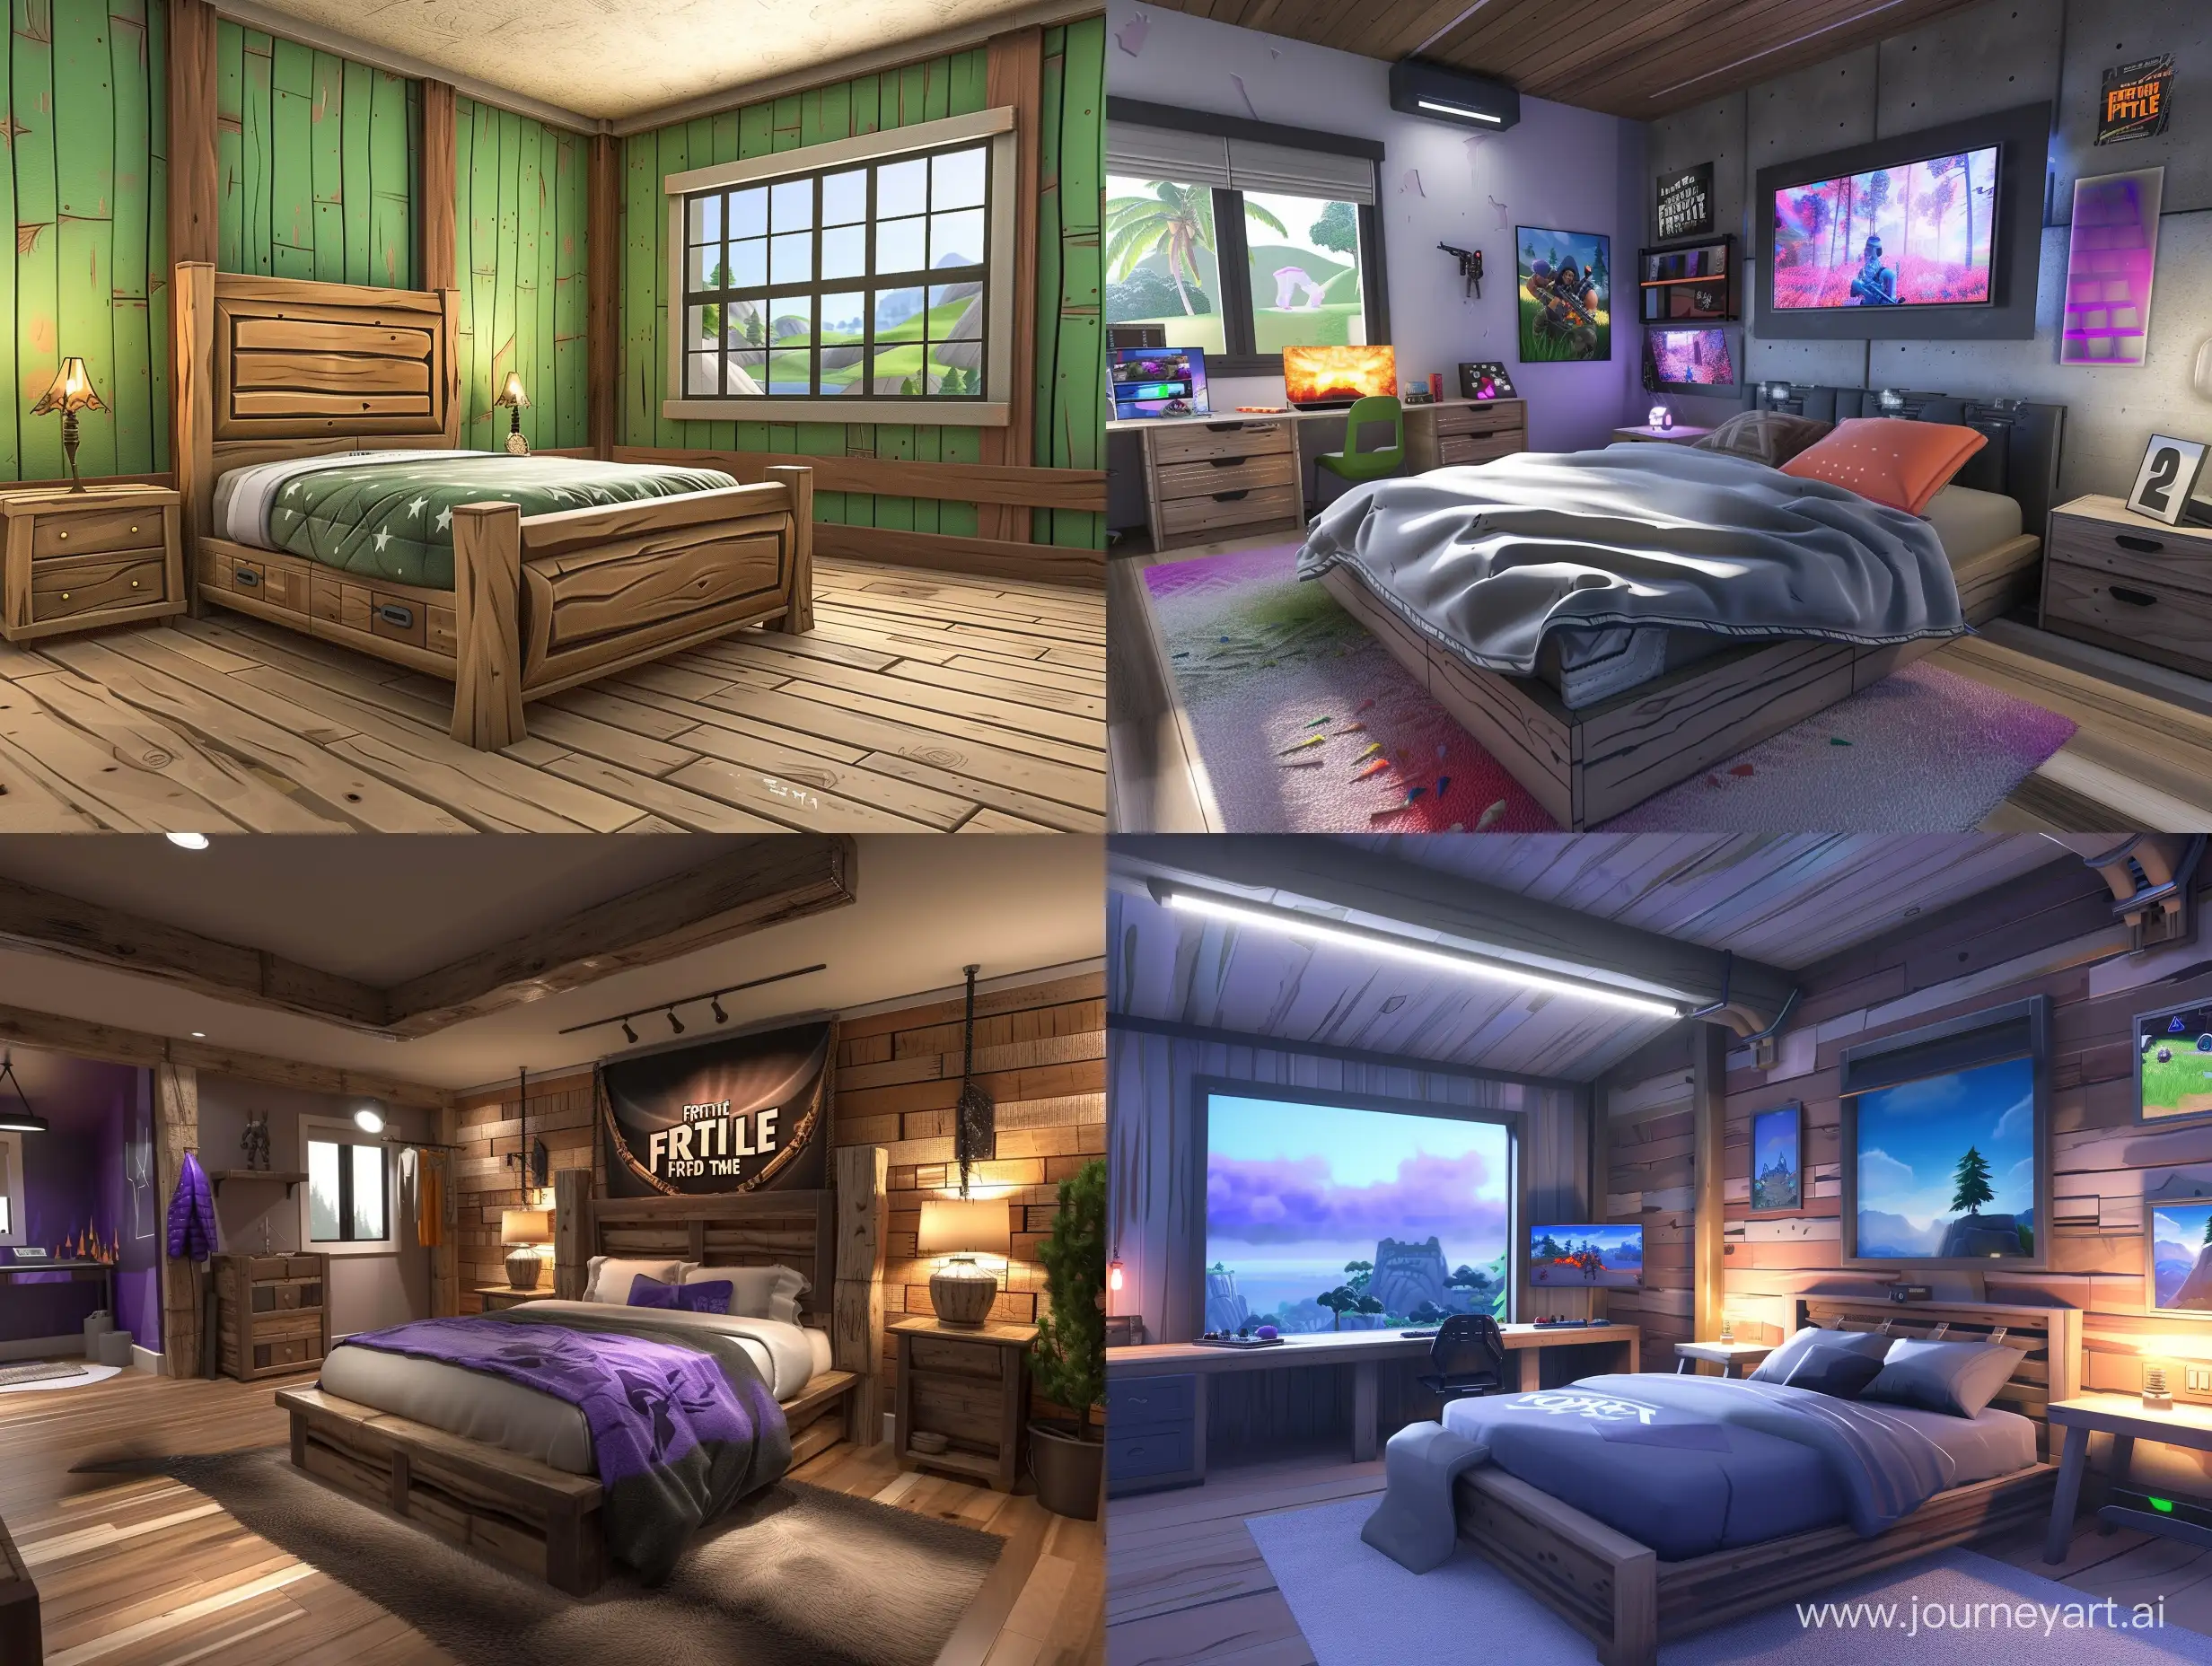 Fortnite themed bedroom, full room view